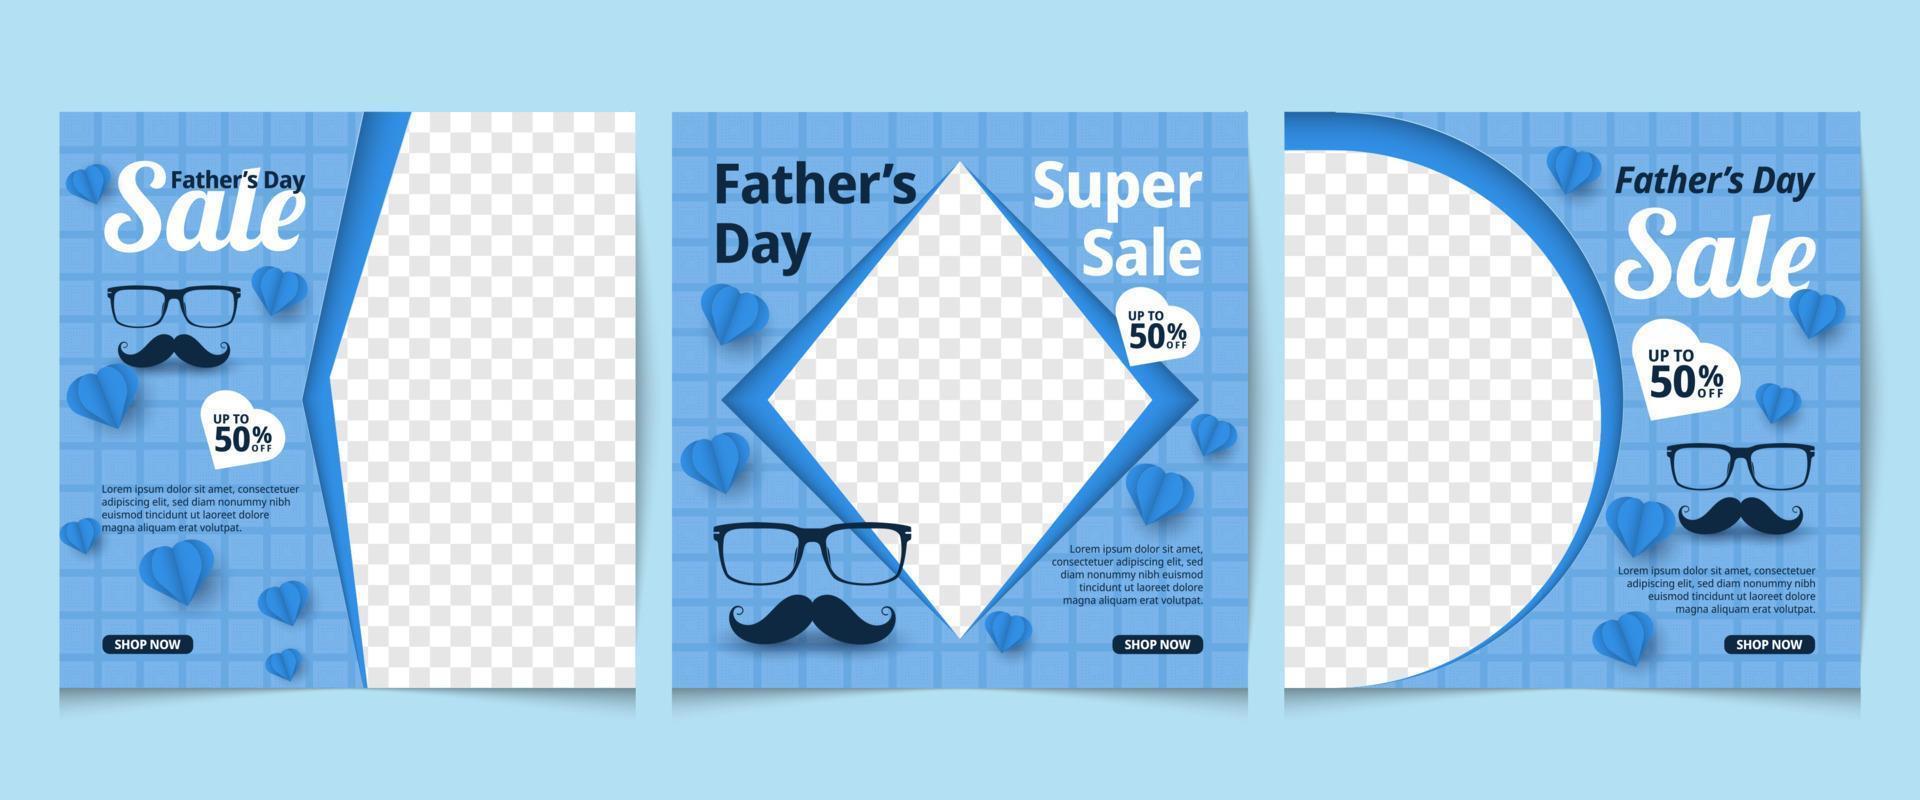 Conjunto de diseños de plantillas de publicaciones en redes sociales del día del padre. pancarta cuadrada en color azul. se puede utilizar para redes sociales, folletos y sitios web vector